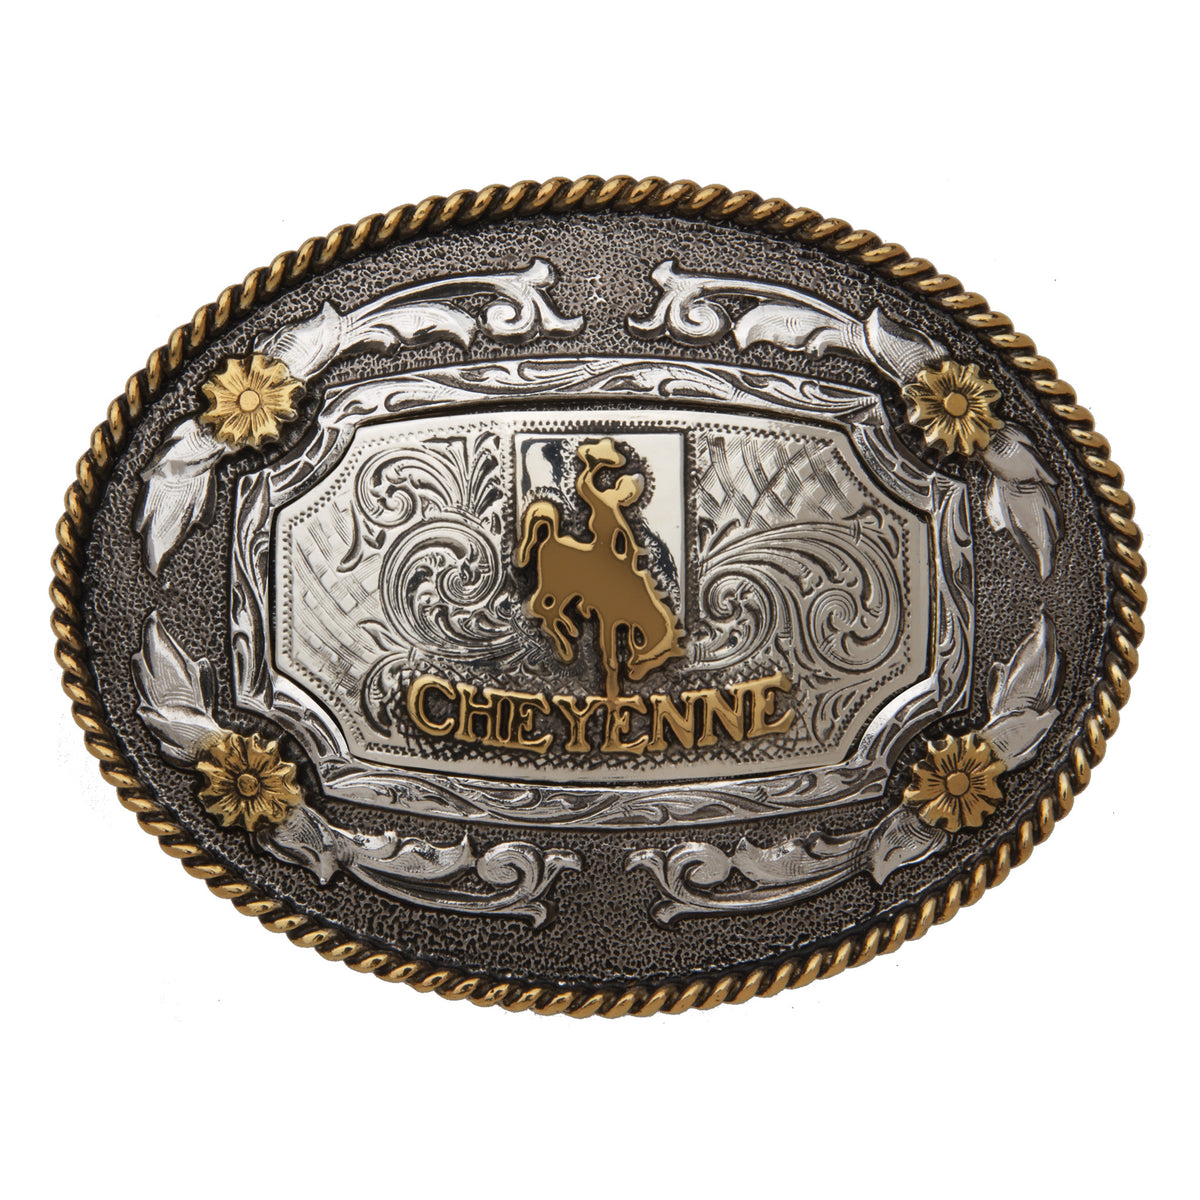 Cheyenne — Oval Rope Edge Buckle